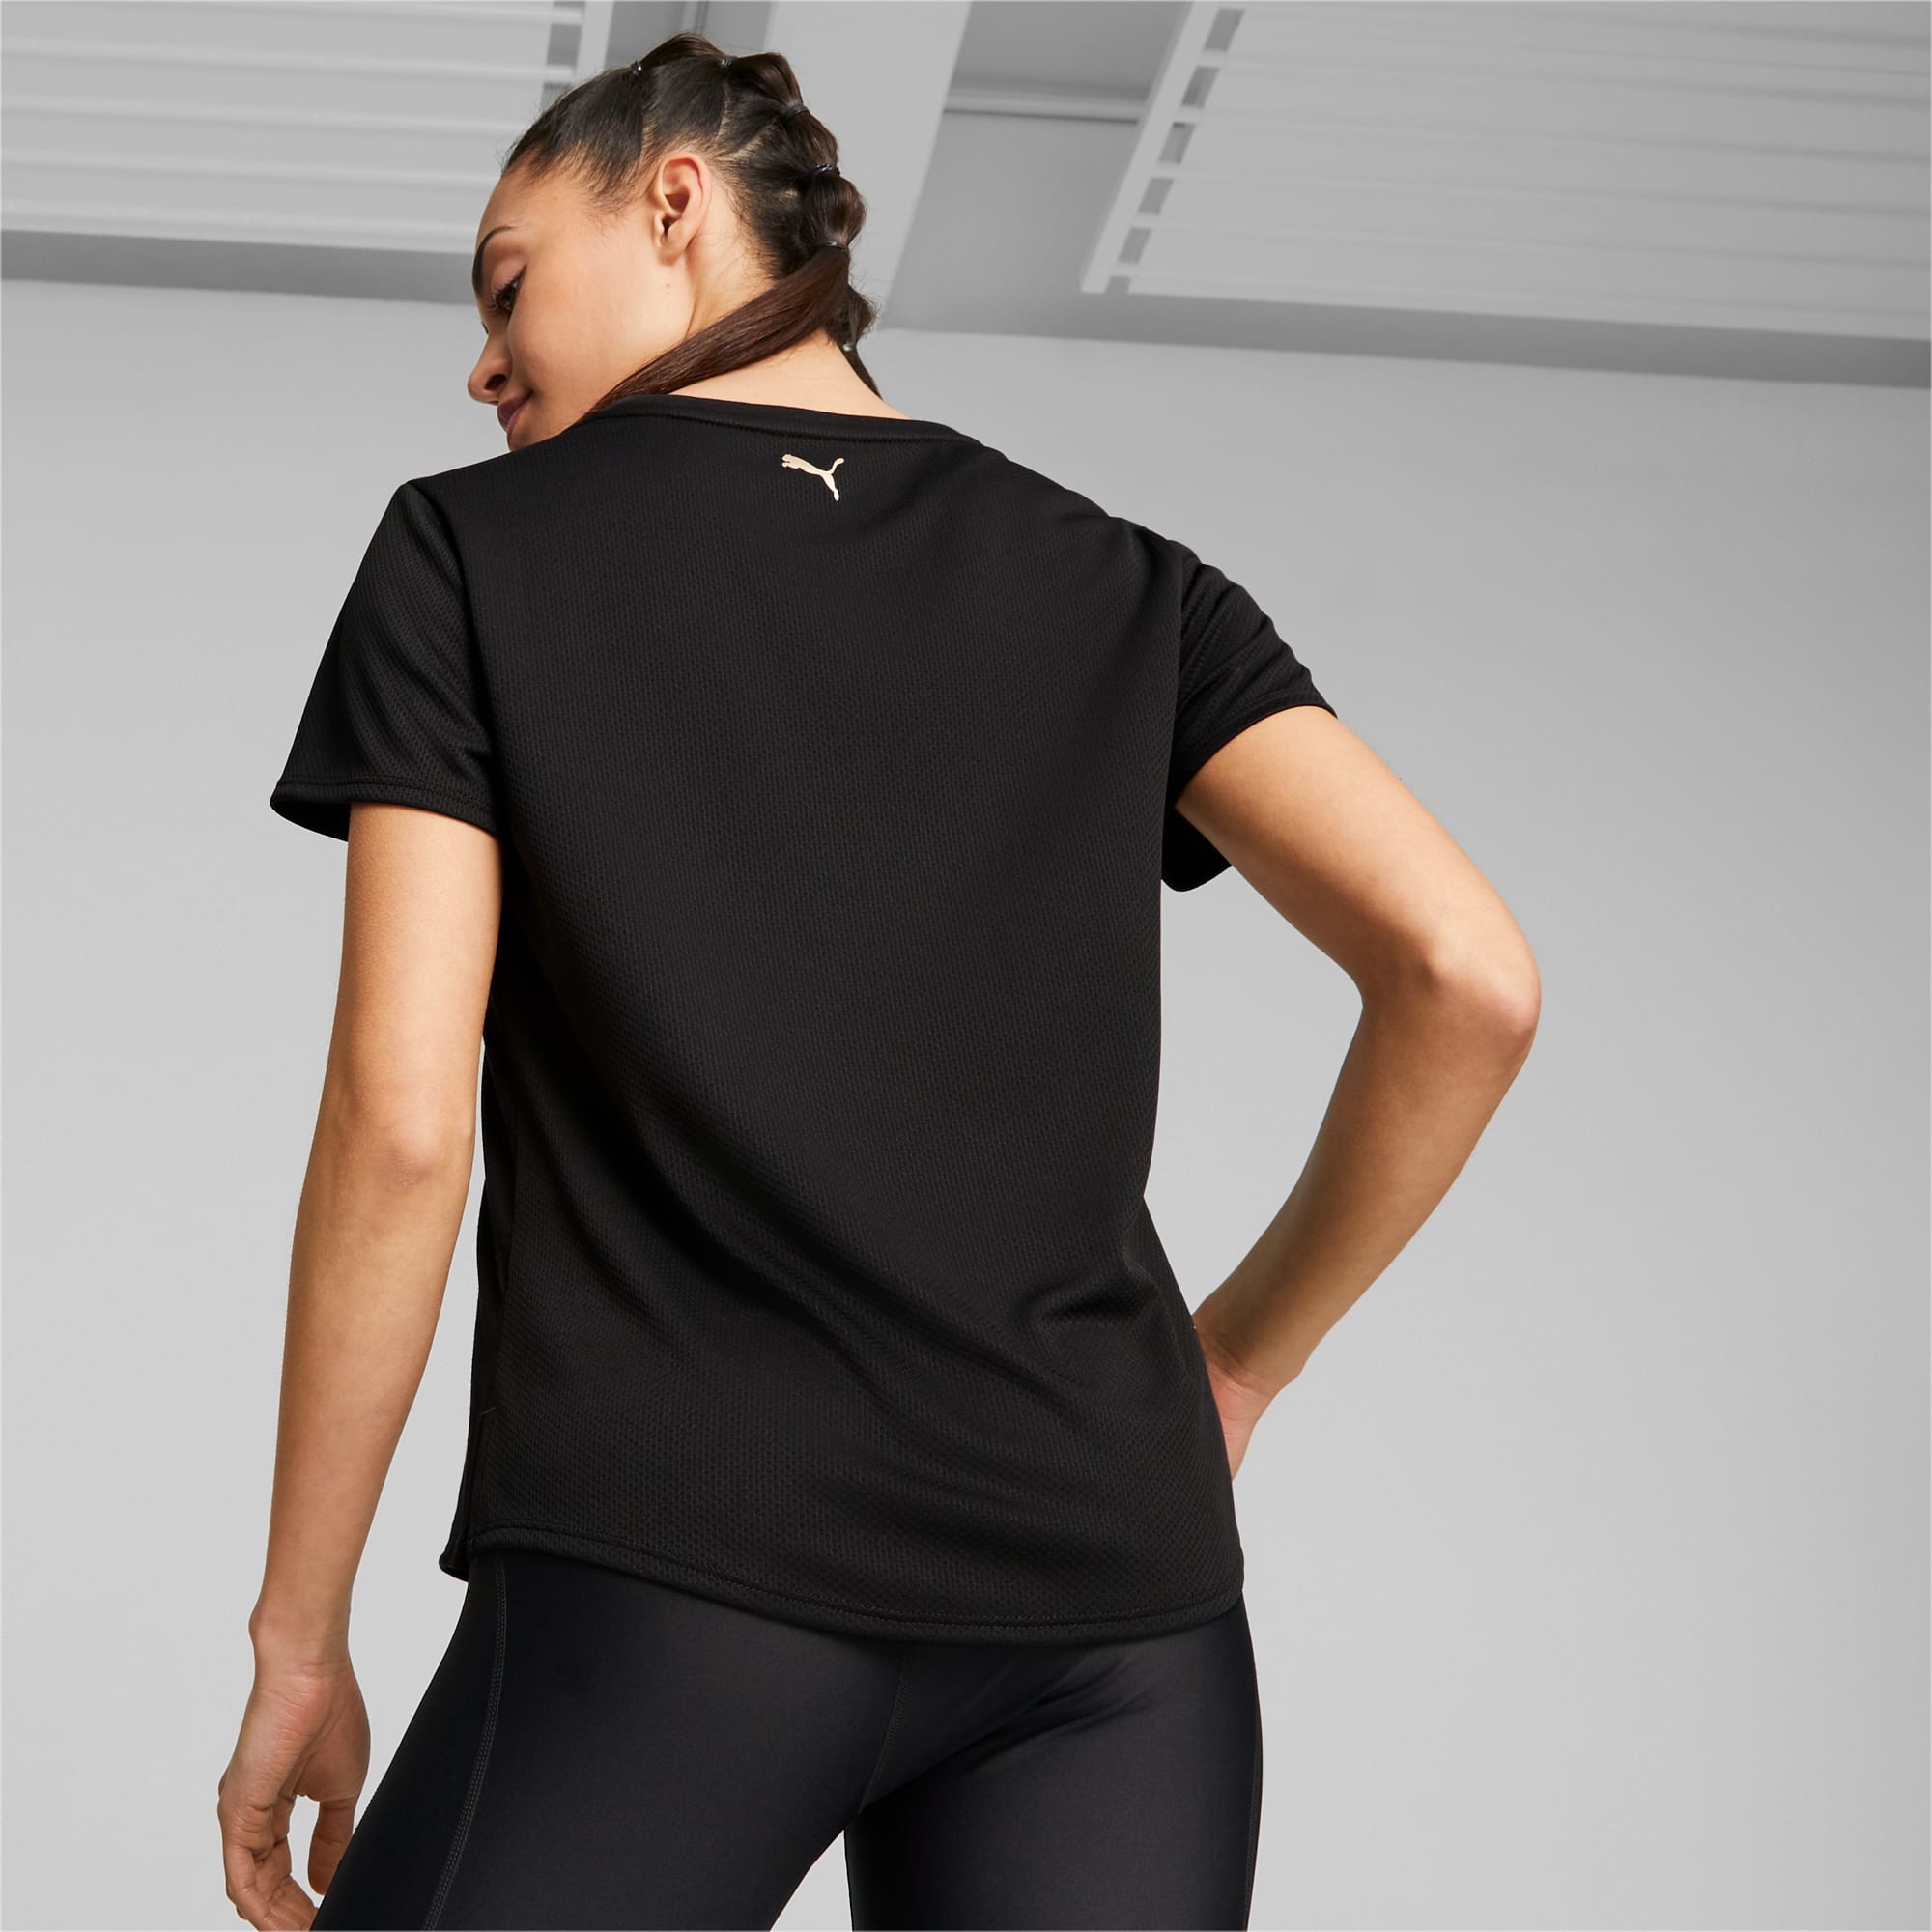 PUMA FIT Ultrabreathe Training T-shirt Voor Dames, Goud/Zwart